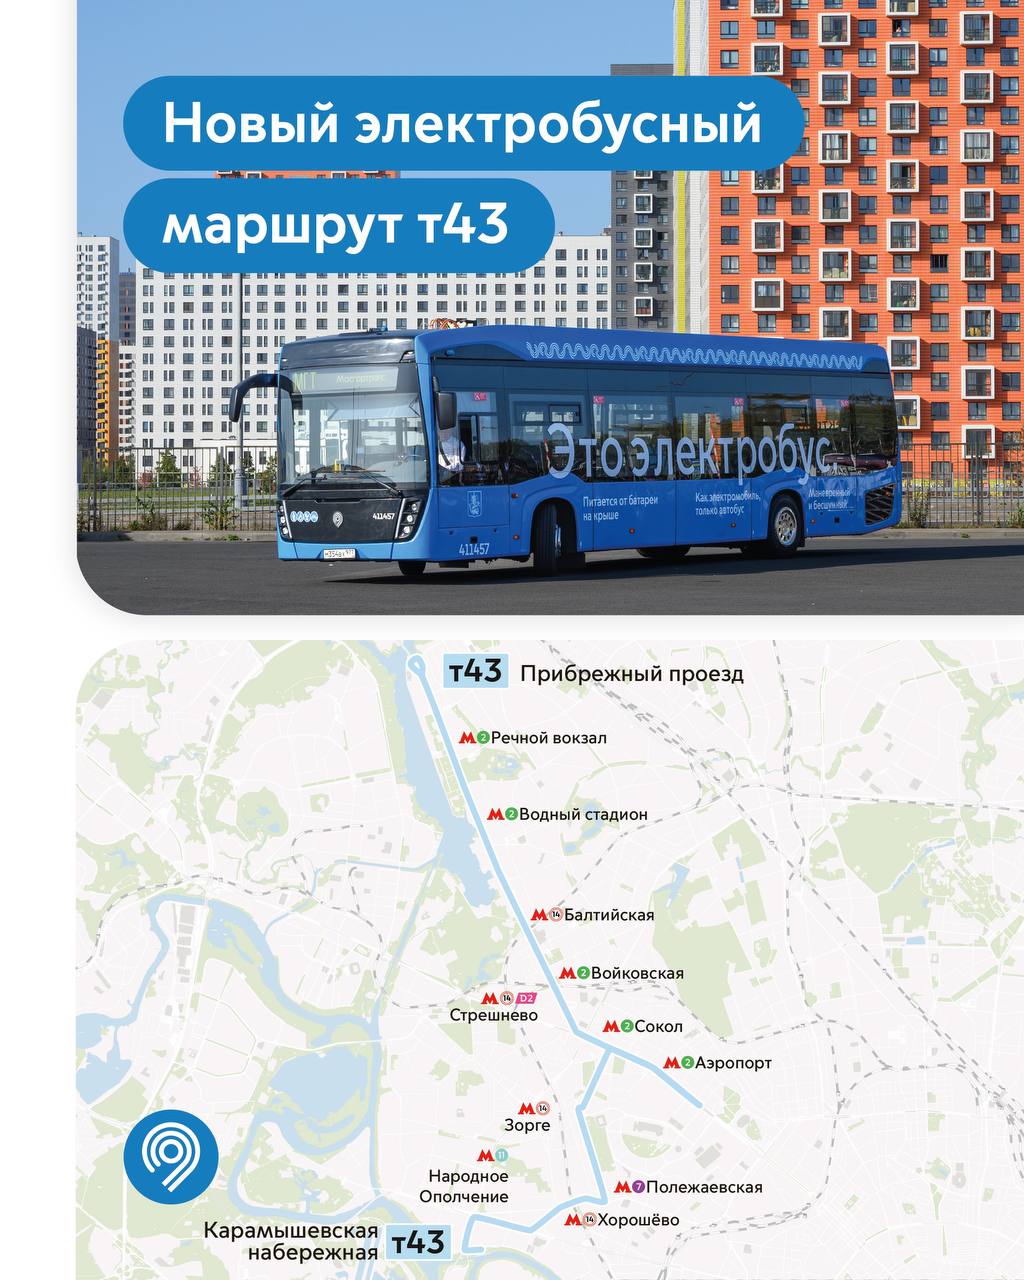 莫斯科 — Individual Route Maps; 莫斯科 — Maps of Autonomous Electric Bus Lines